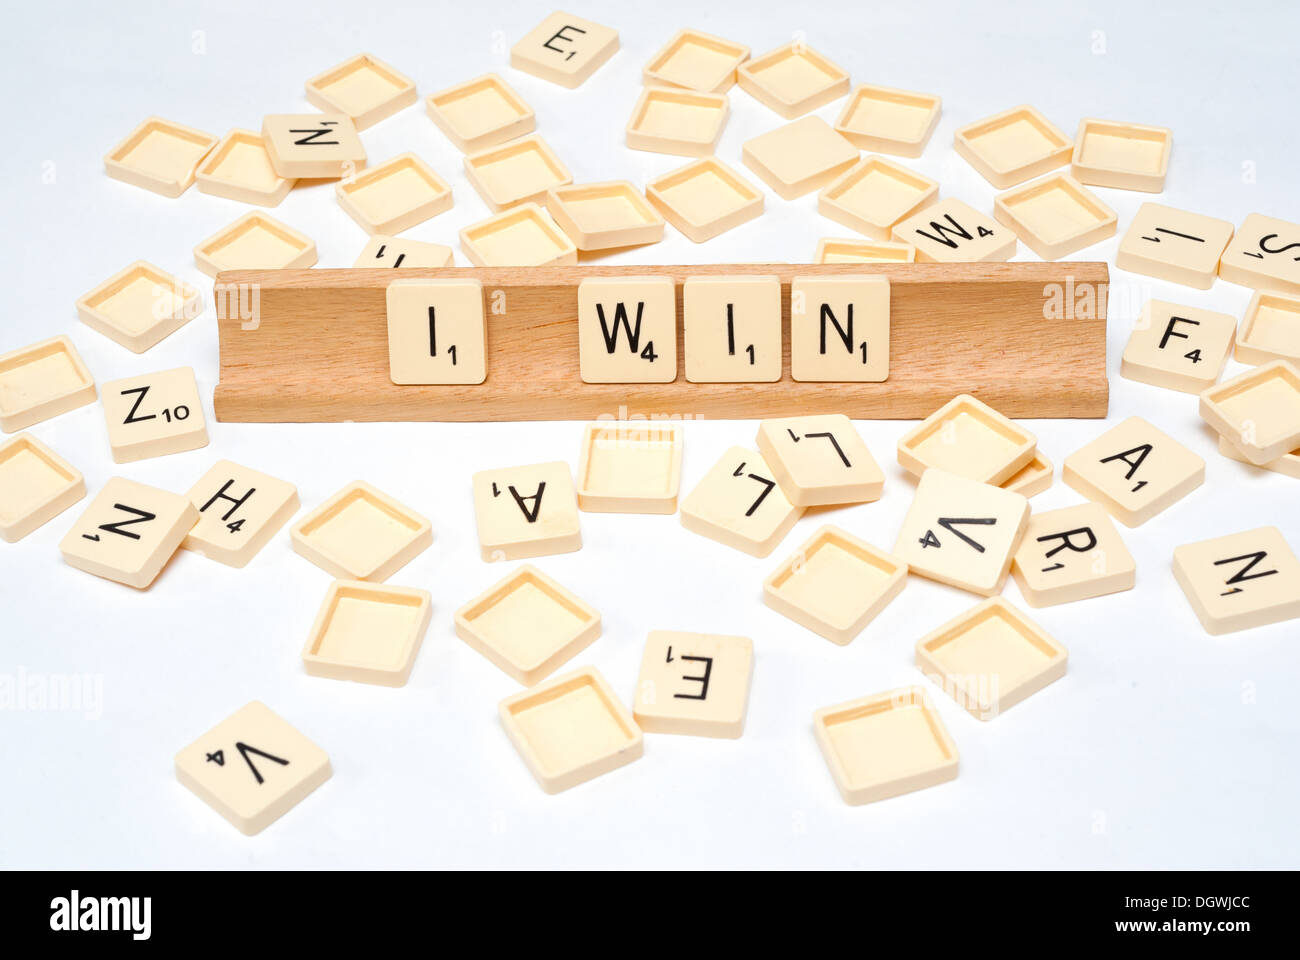 'I win' written in scrabble tiles Stock Photo